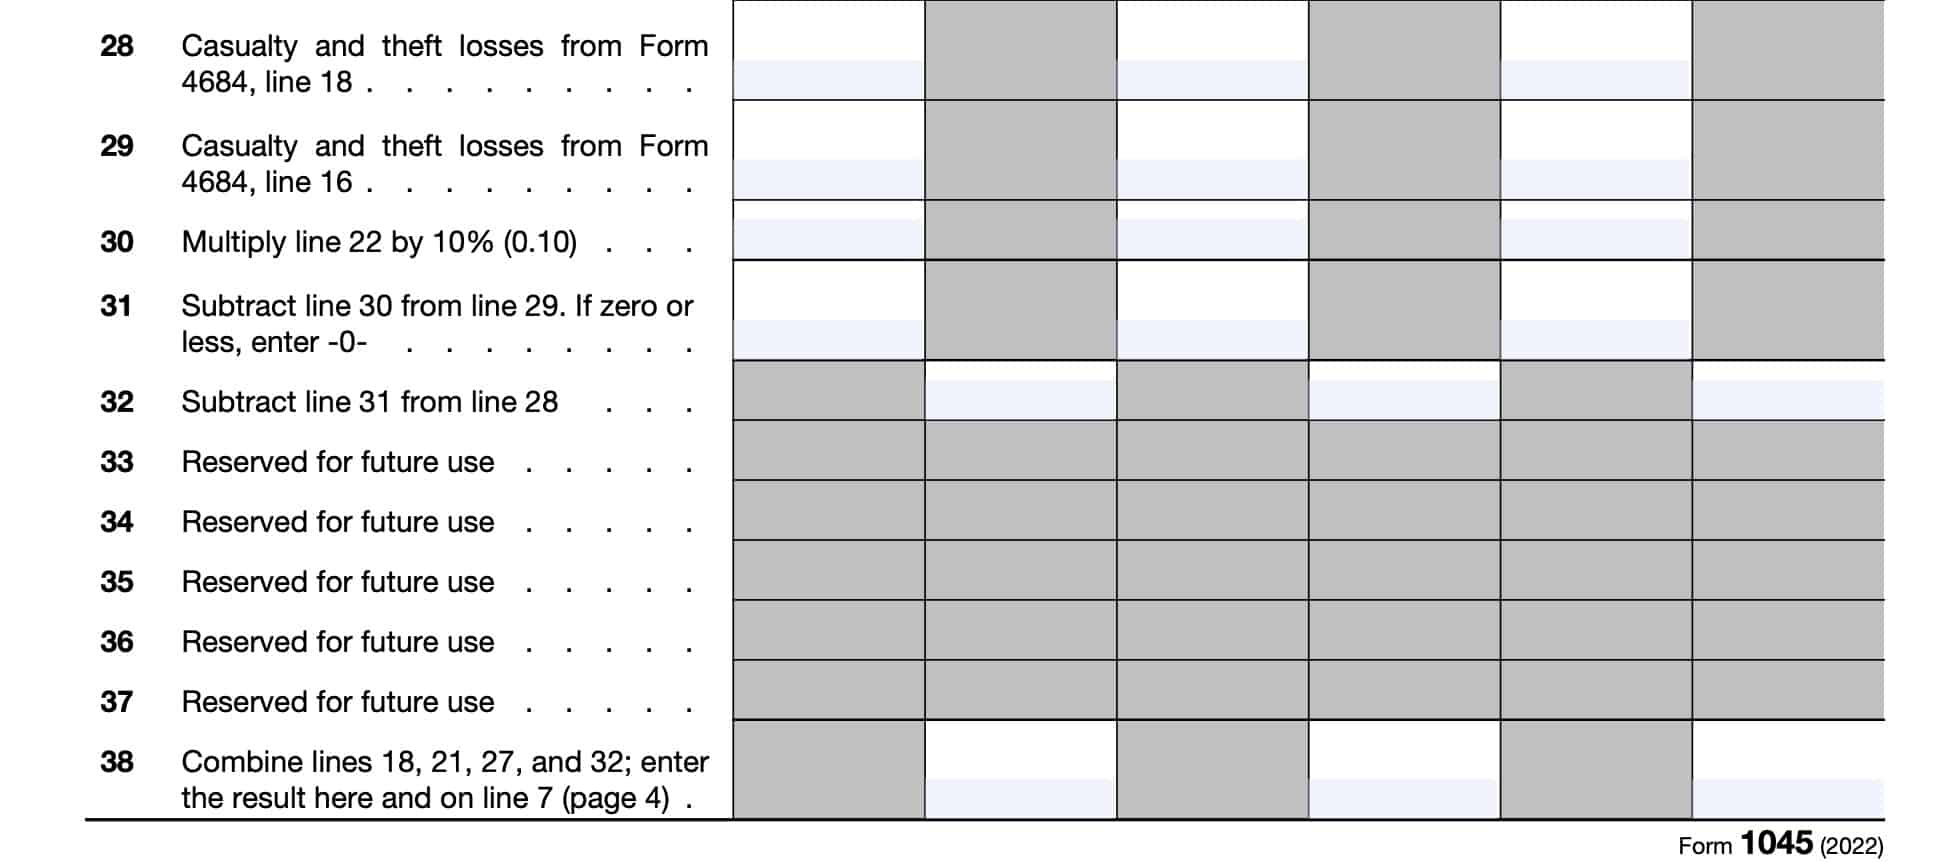 Schedule B, lines 28-28